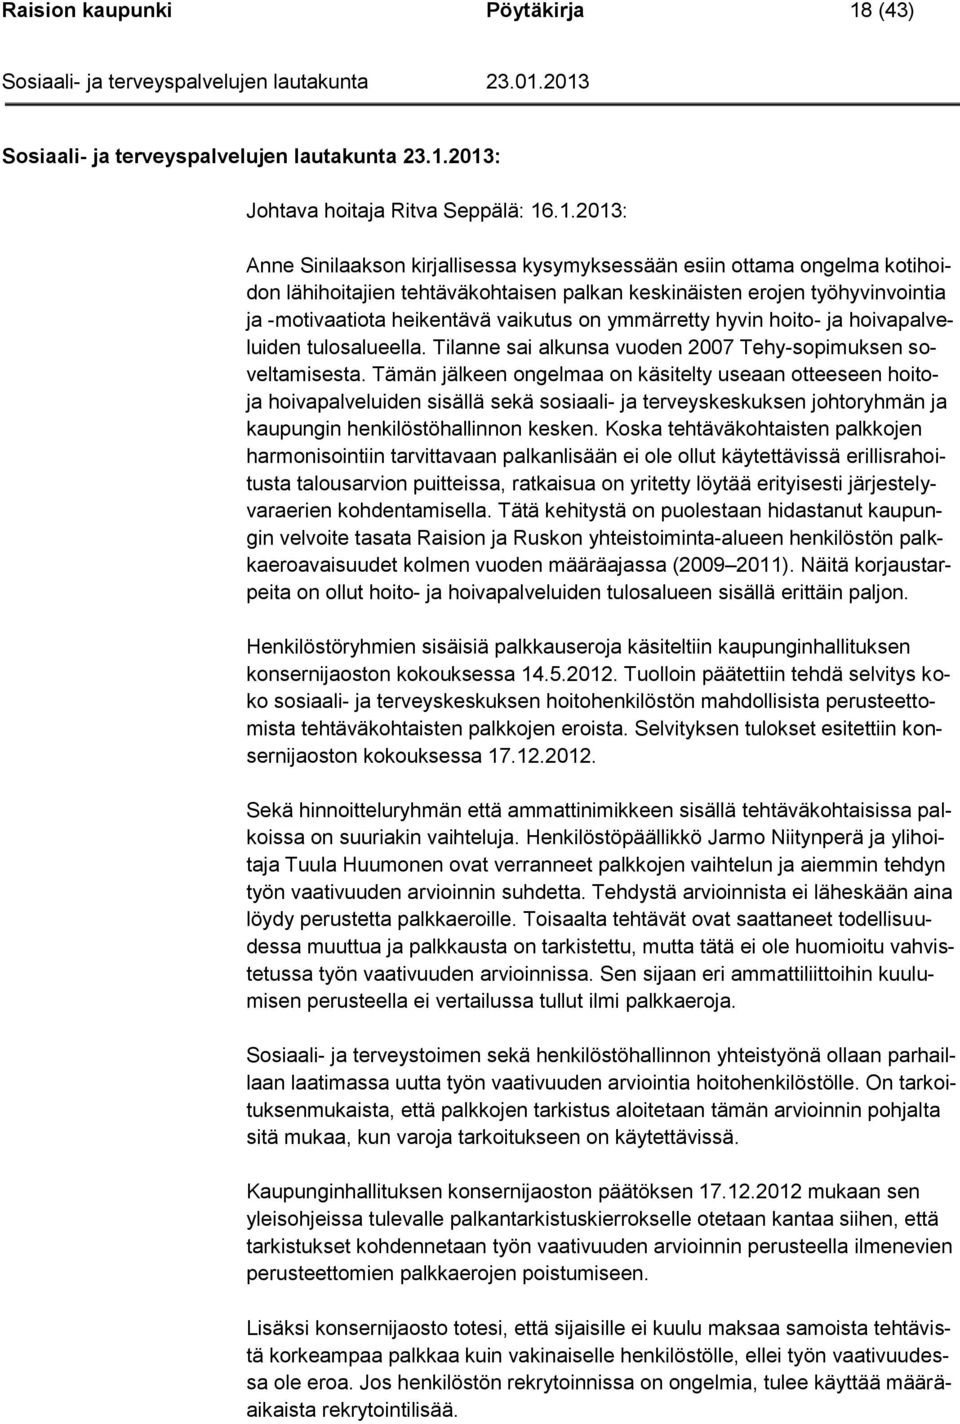 2013: Johtava hoitaja Ritva Seppälä: 16.1.2013: Anne Sinilaakson kirjallisessa kysymyksessään esiin ottama ongelma kotihoidon lähihoitajien tehtäväkohtaisen palkan keskinäisten erojen työhyvinvointia